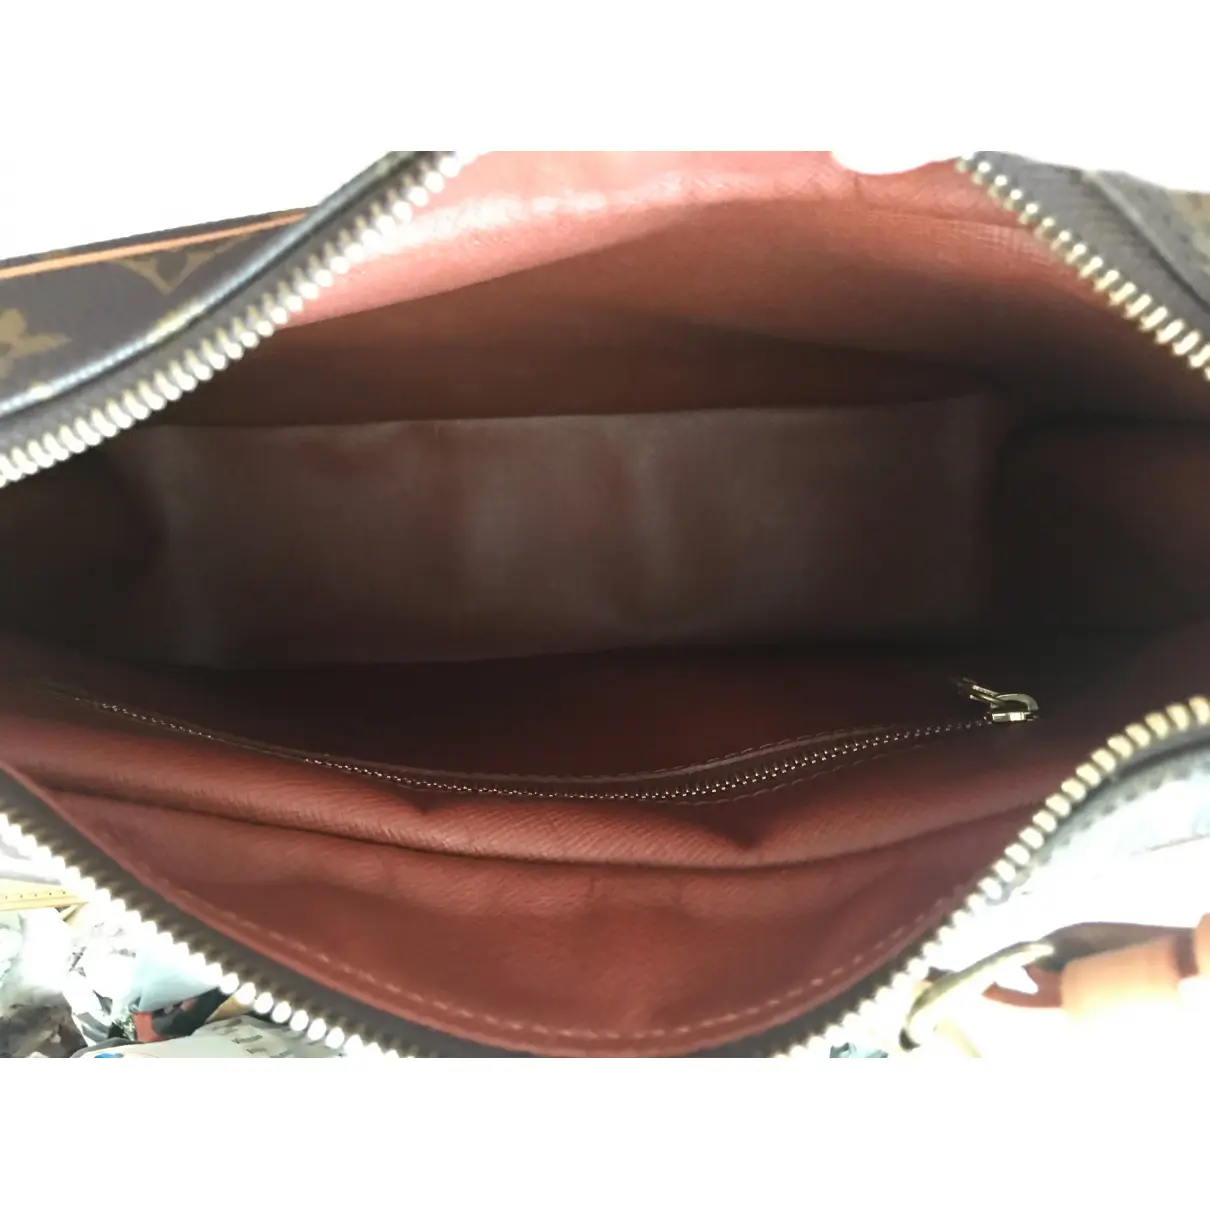 Boulogne leather handbag Louis Vuitton - Vintage